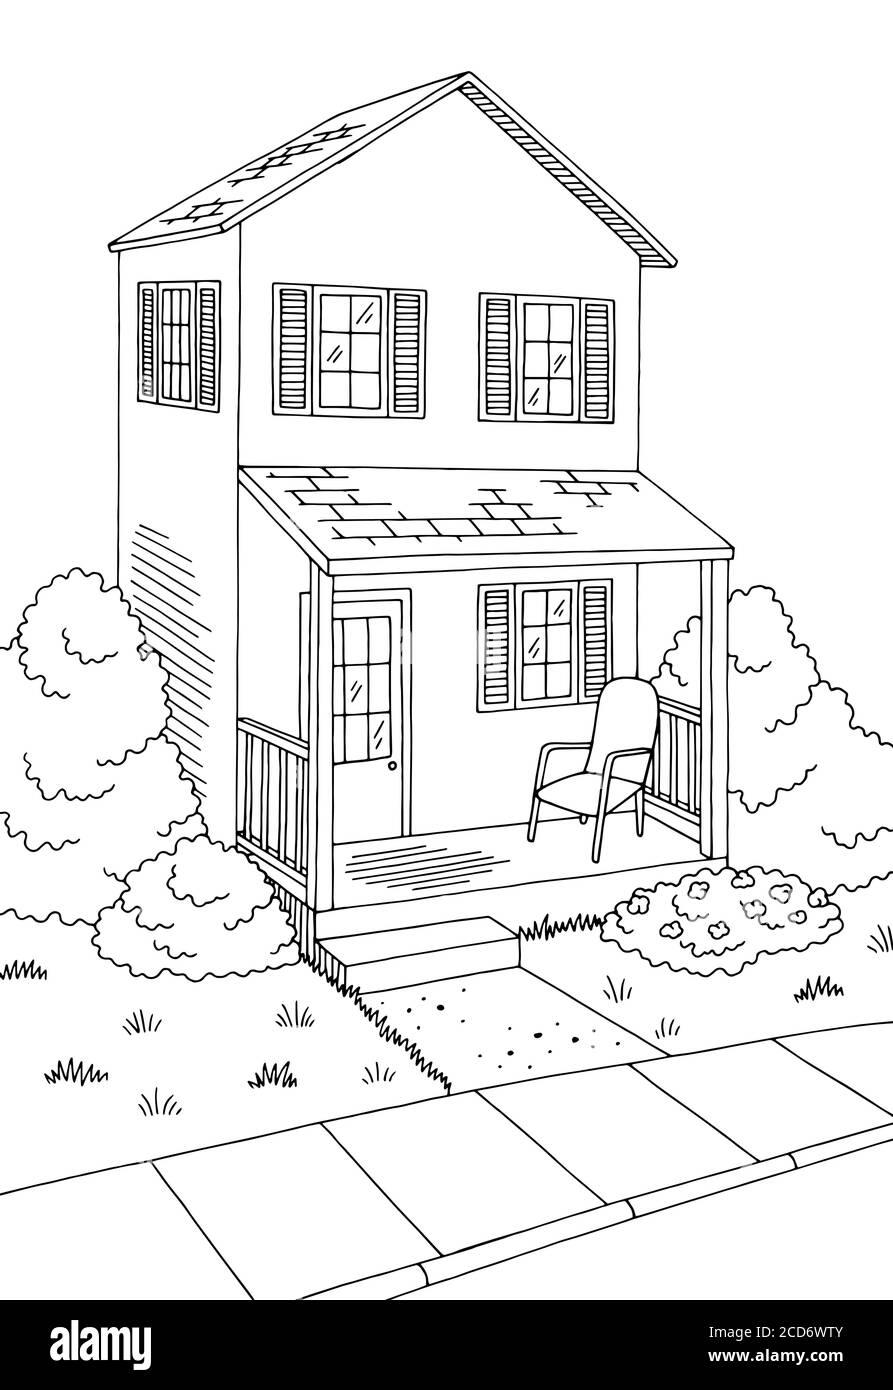 Street Road Graphic House noir blanc paysage vertical dessin illustration vecteur Illustration de Vecteur